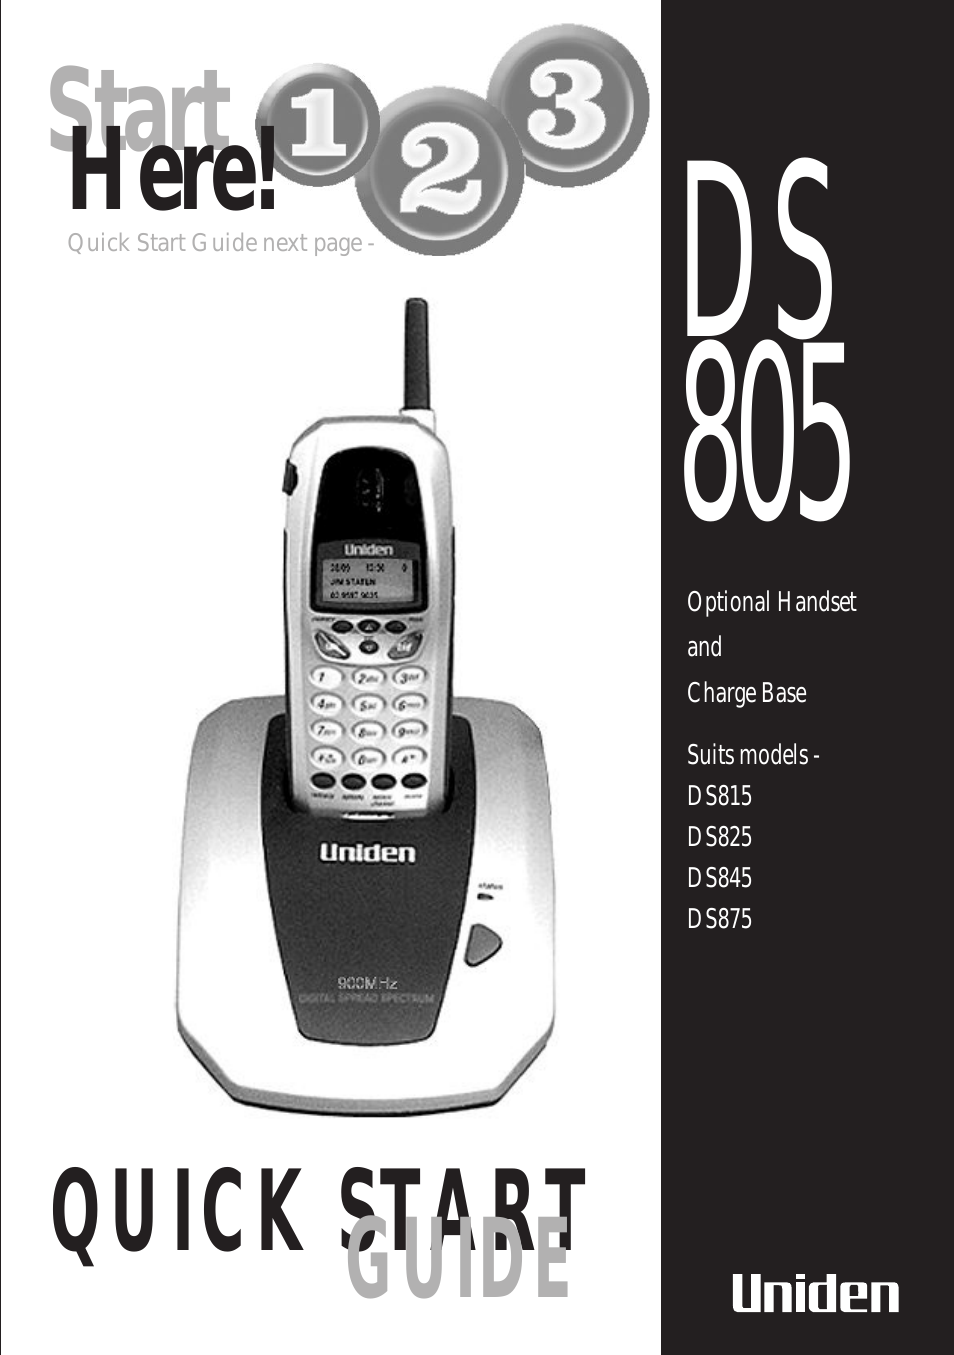 DS 805